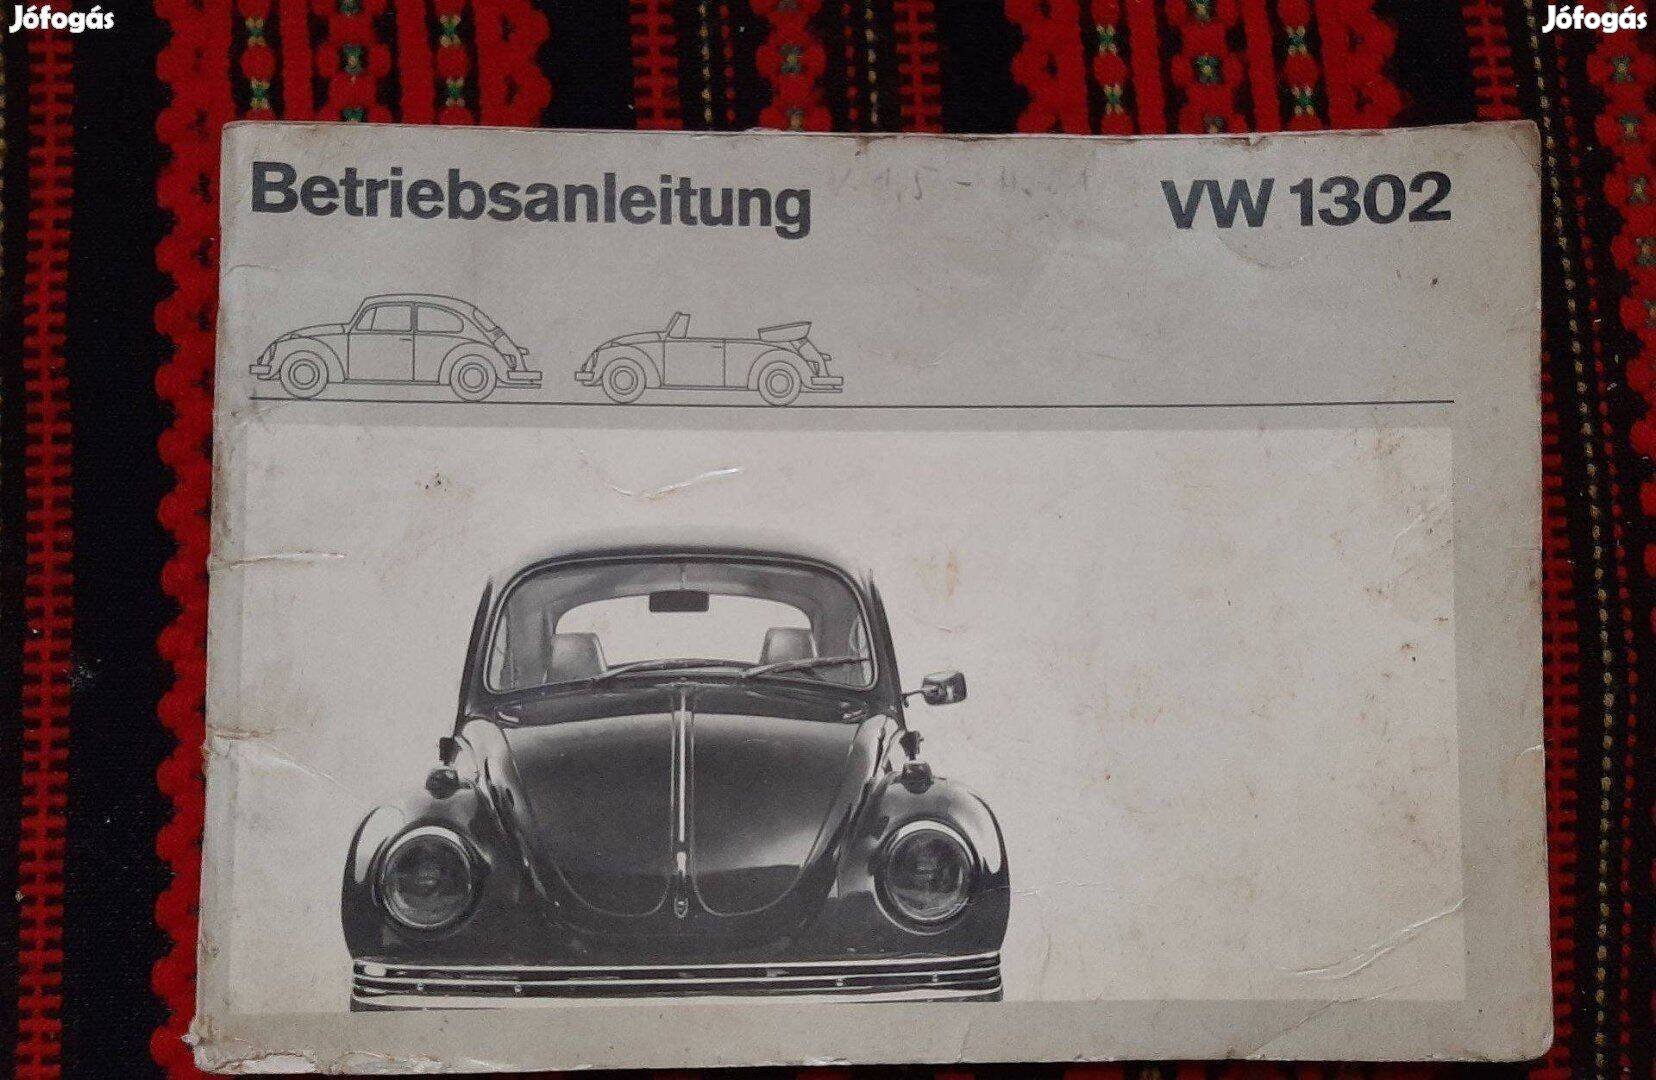 Volkswagen VW 1302 kezelési útmutató veterán autó német ritka 1970